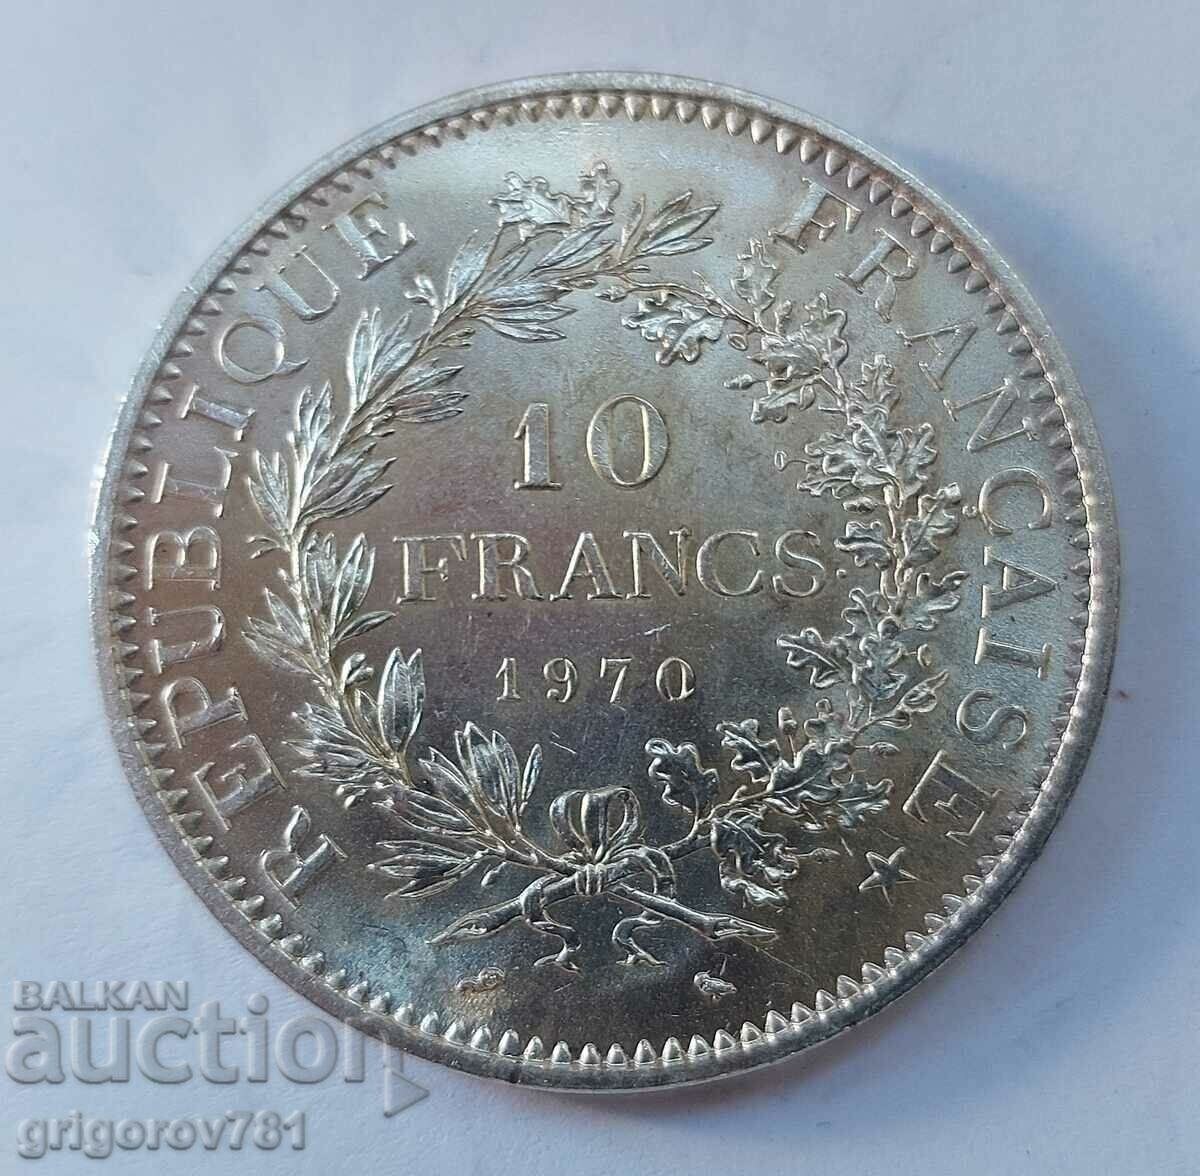 10 Franci Argint Franta 1970 - Moneda de argint #28